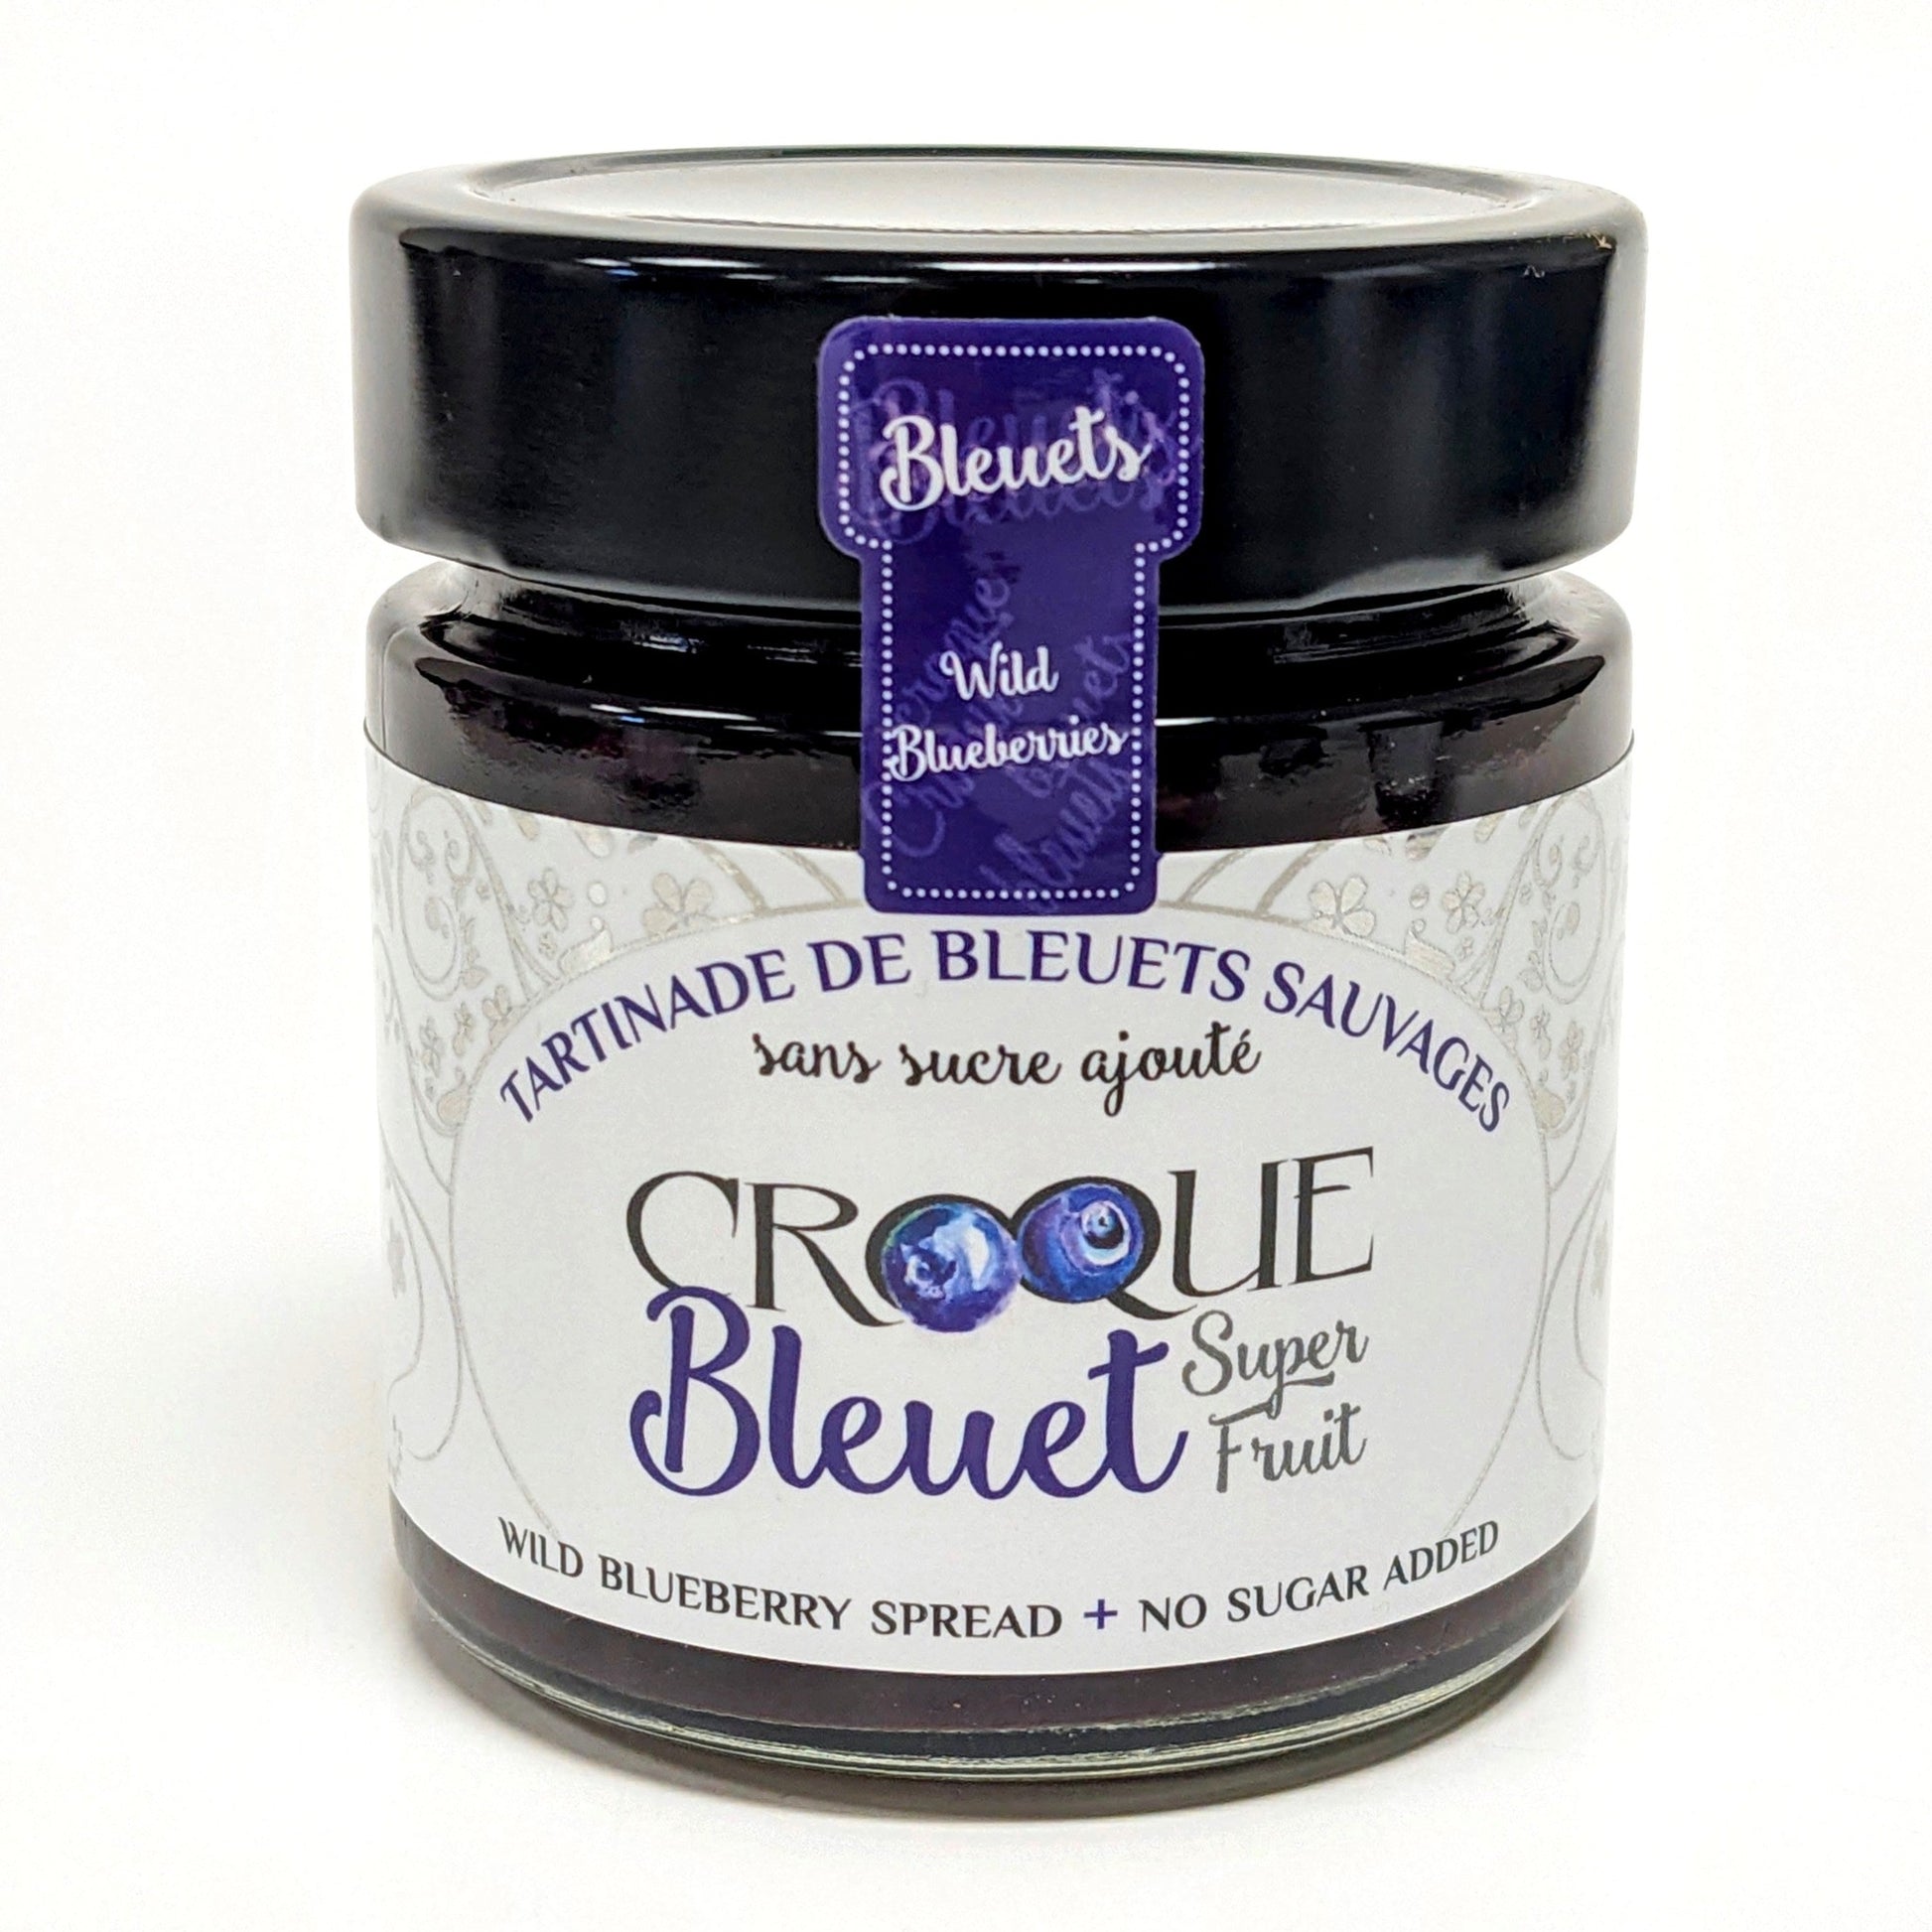 Tartinade de bleuets - Croque Bleuet – Gourmande boutique